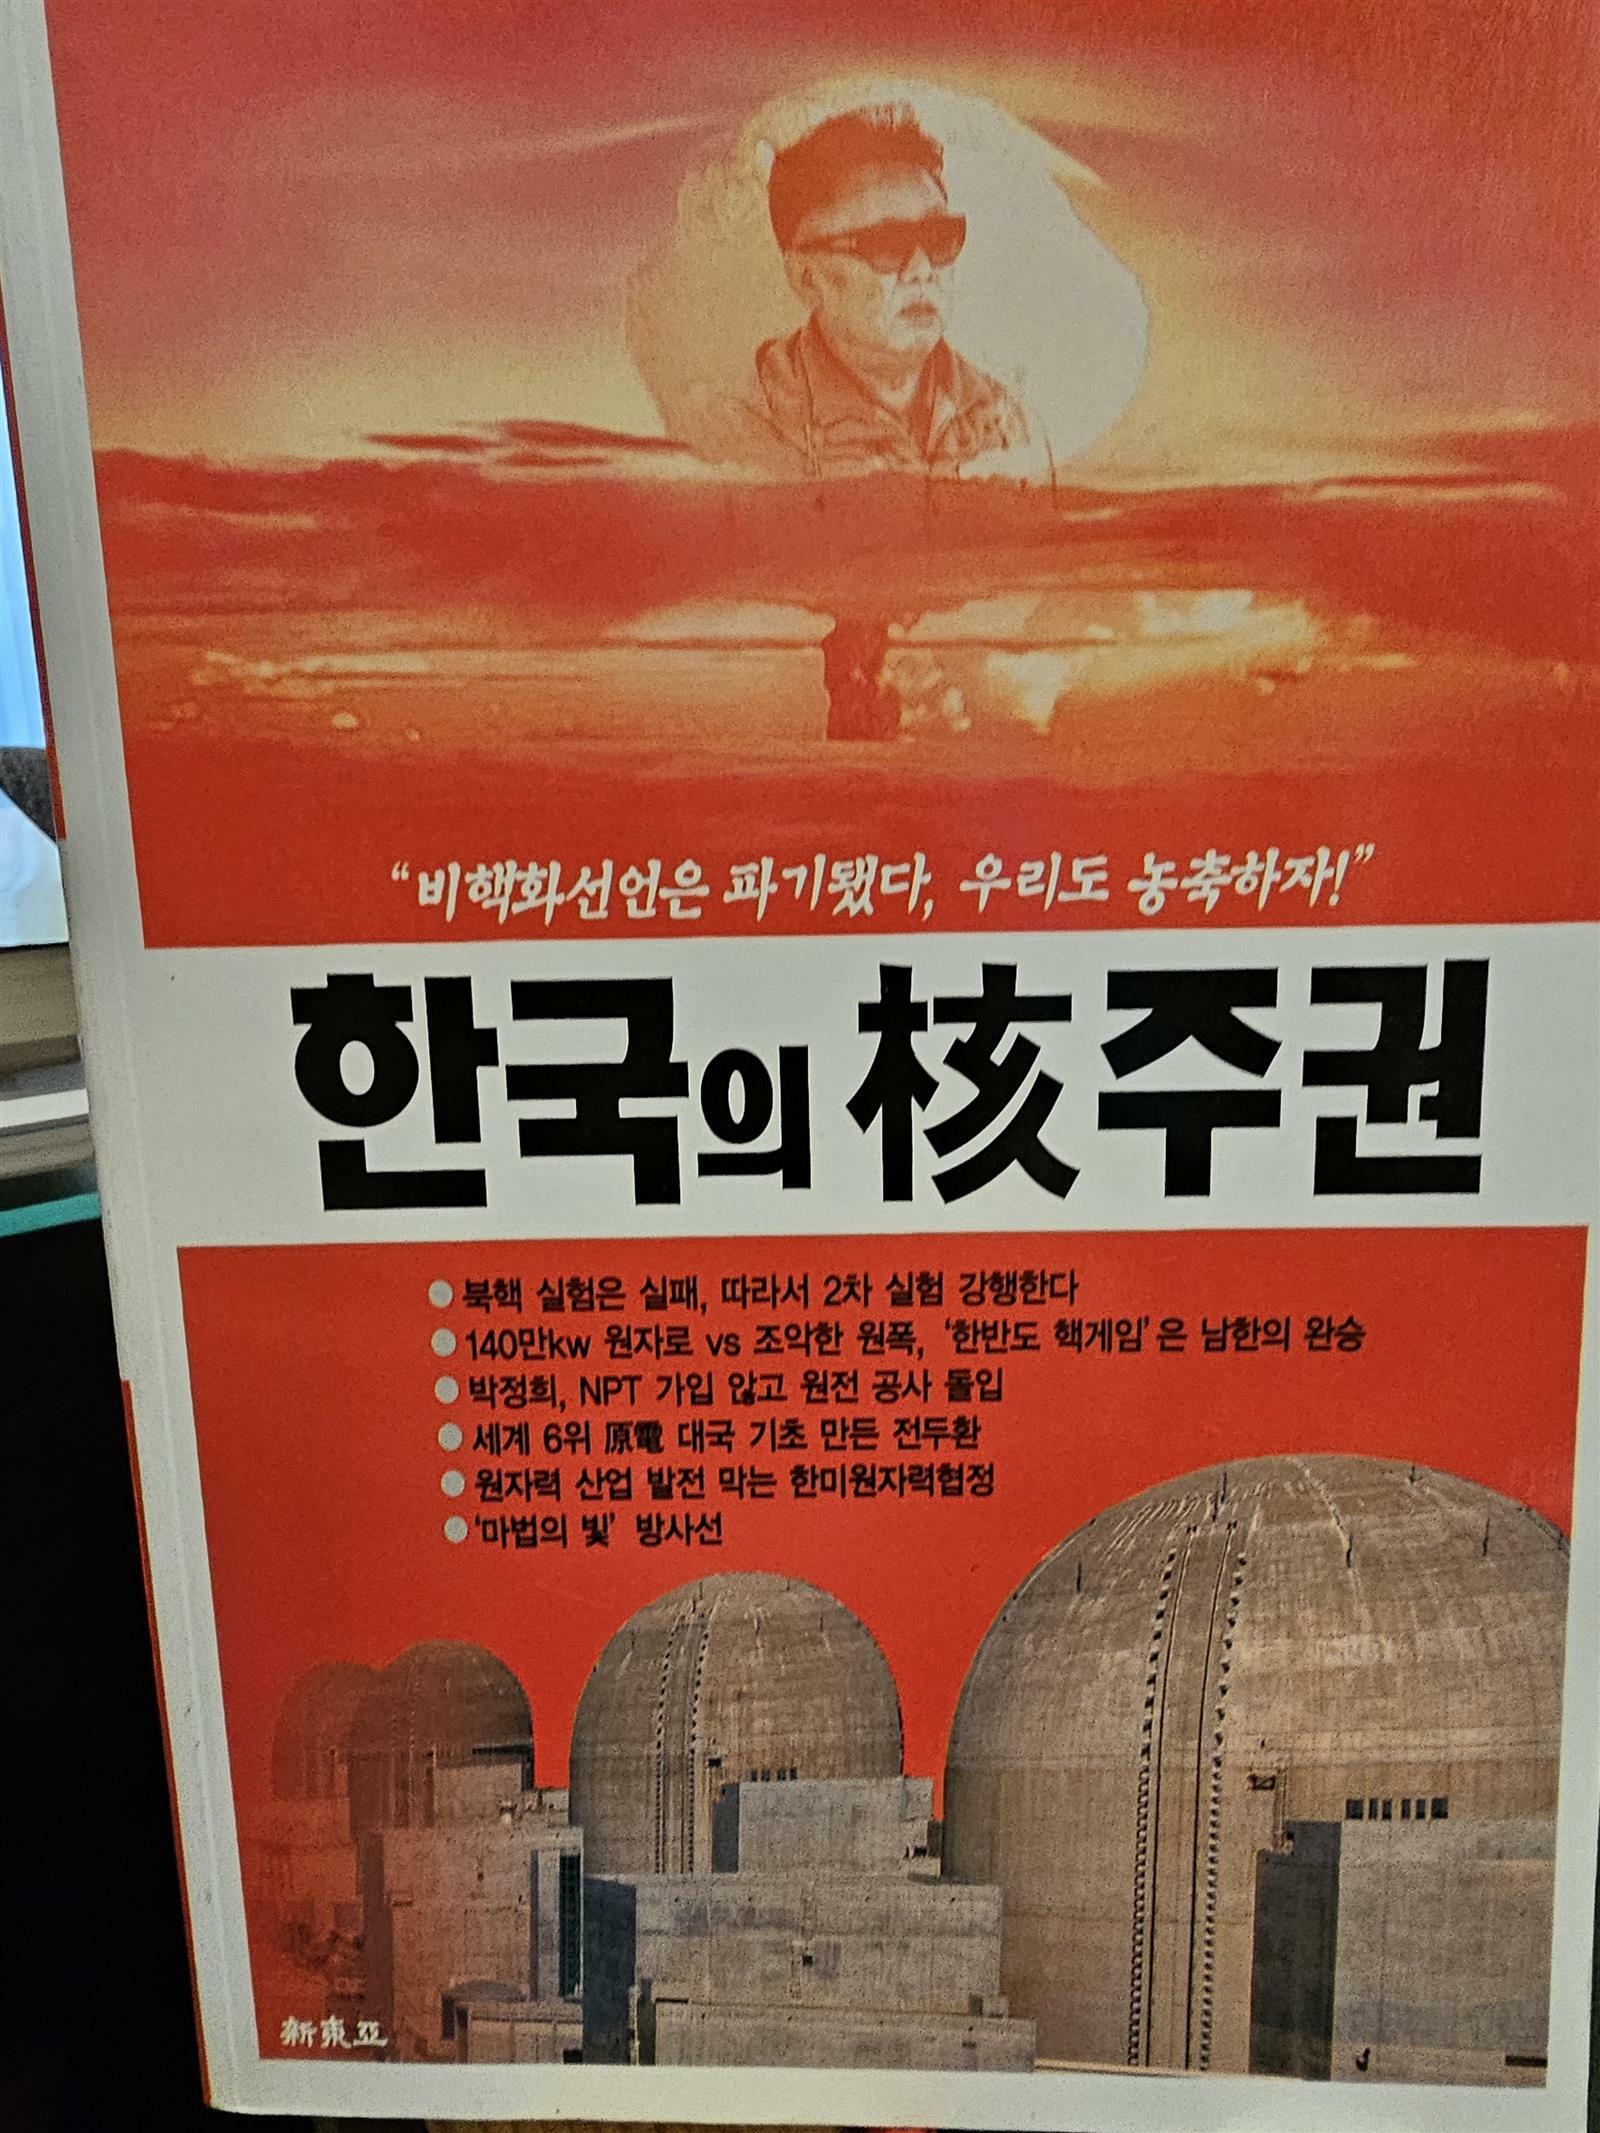 [중고] 한국의 핵주권 - 비핵화선언은 파기됐다 우리도 농축하자  신동아 2006년 12월호 특별부록